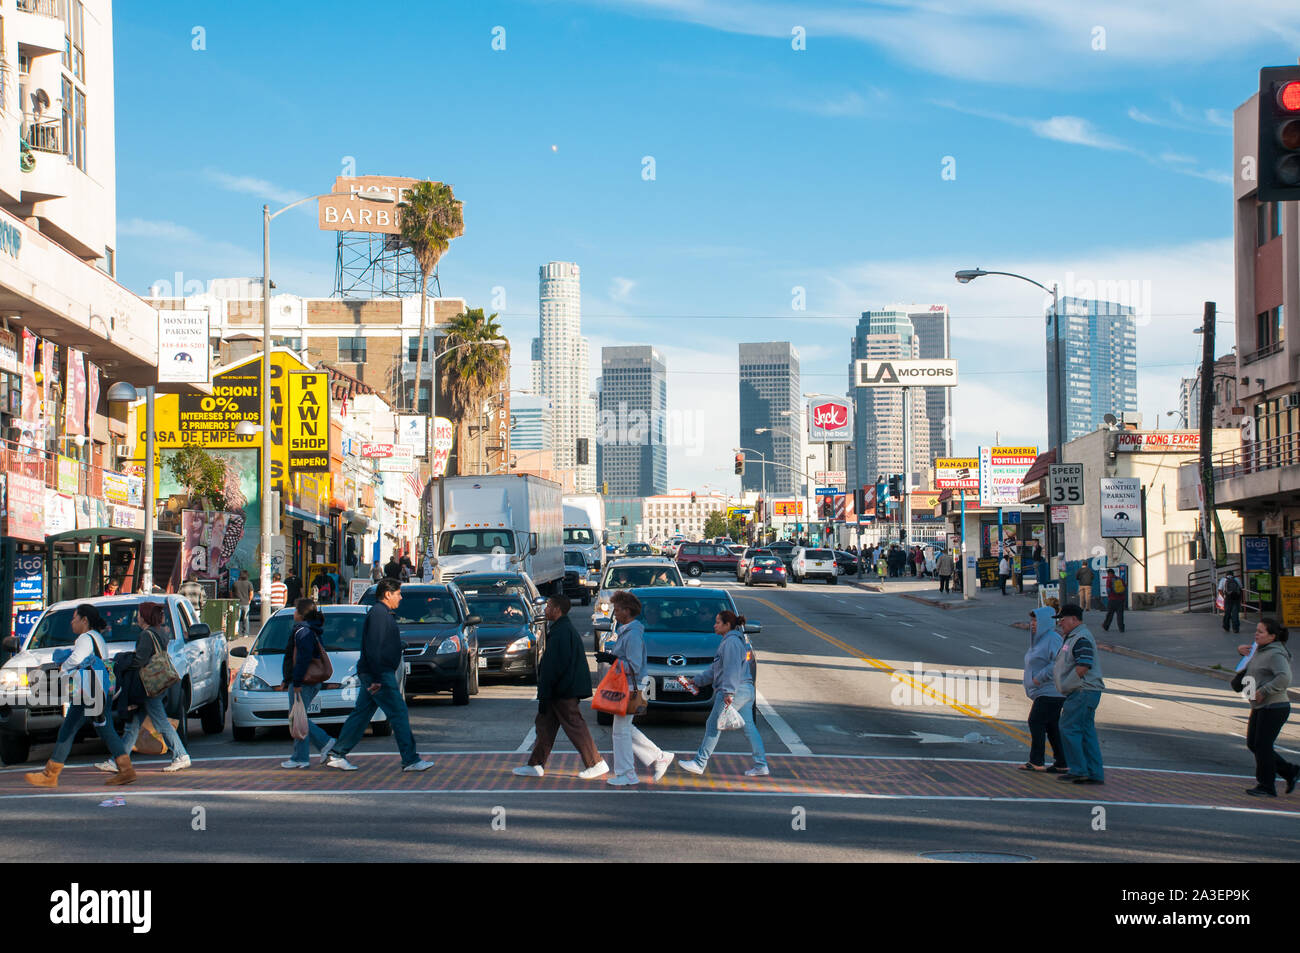 Les personnes qui traversent la rue au centre-ville de Los Angeles, le 15 juillet 2015 - Los Angeles, CA Banque D'Images